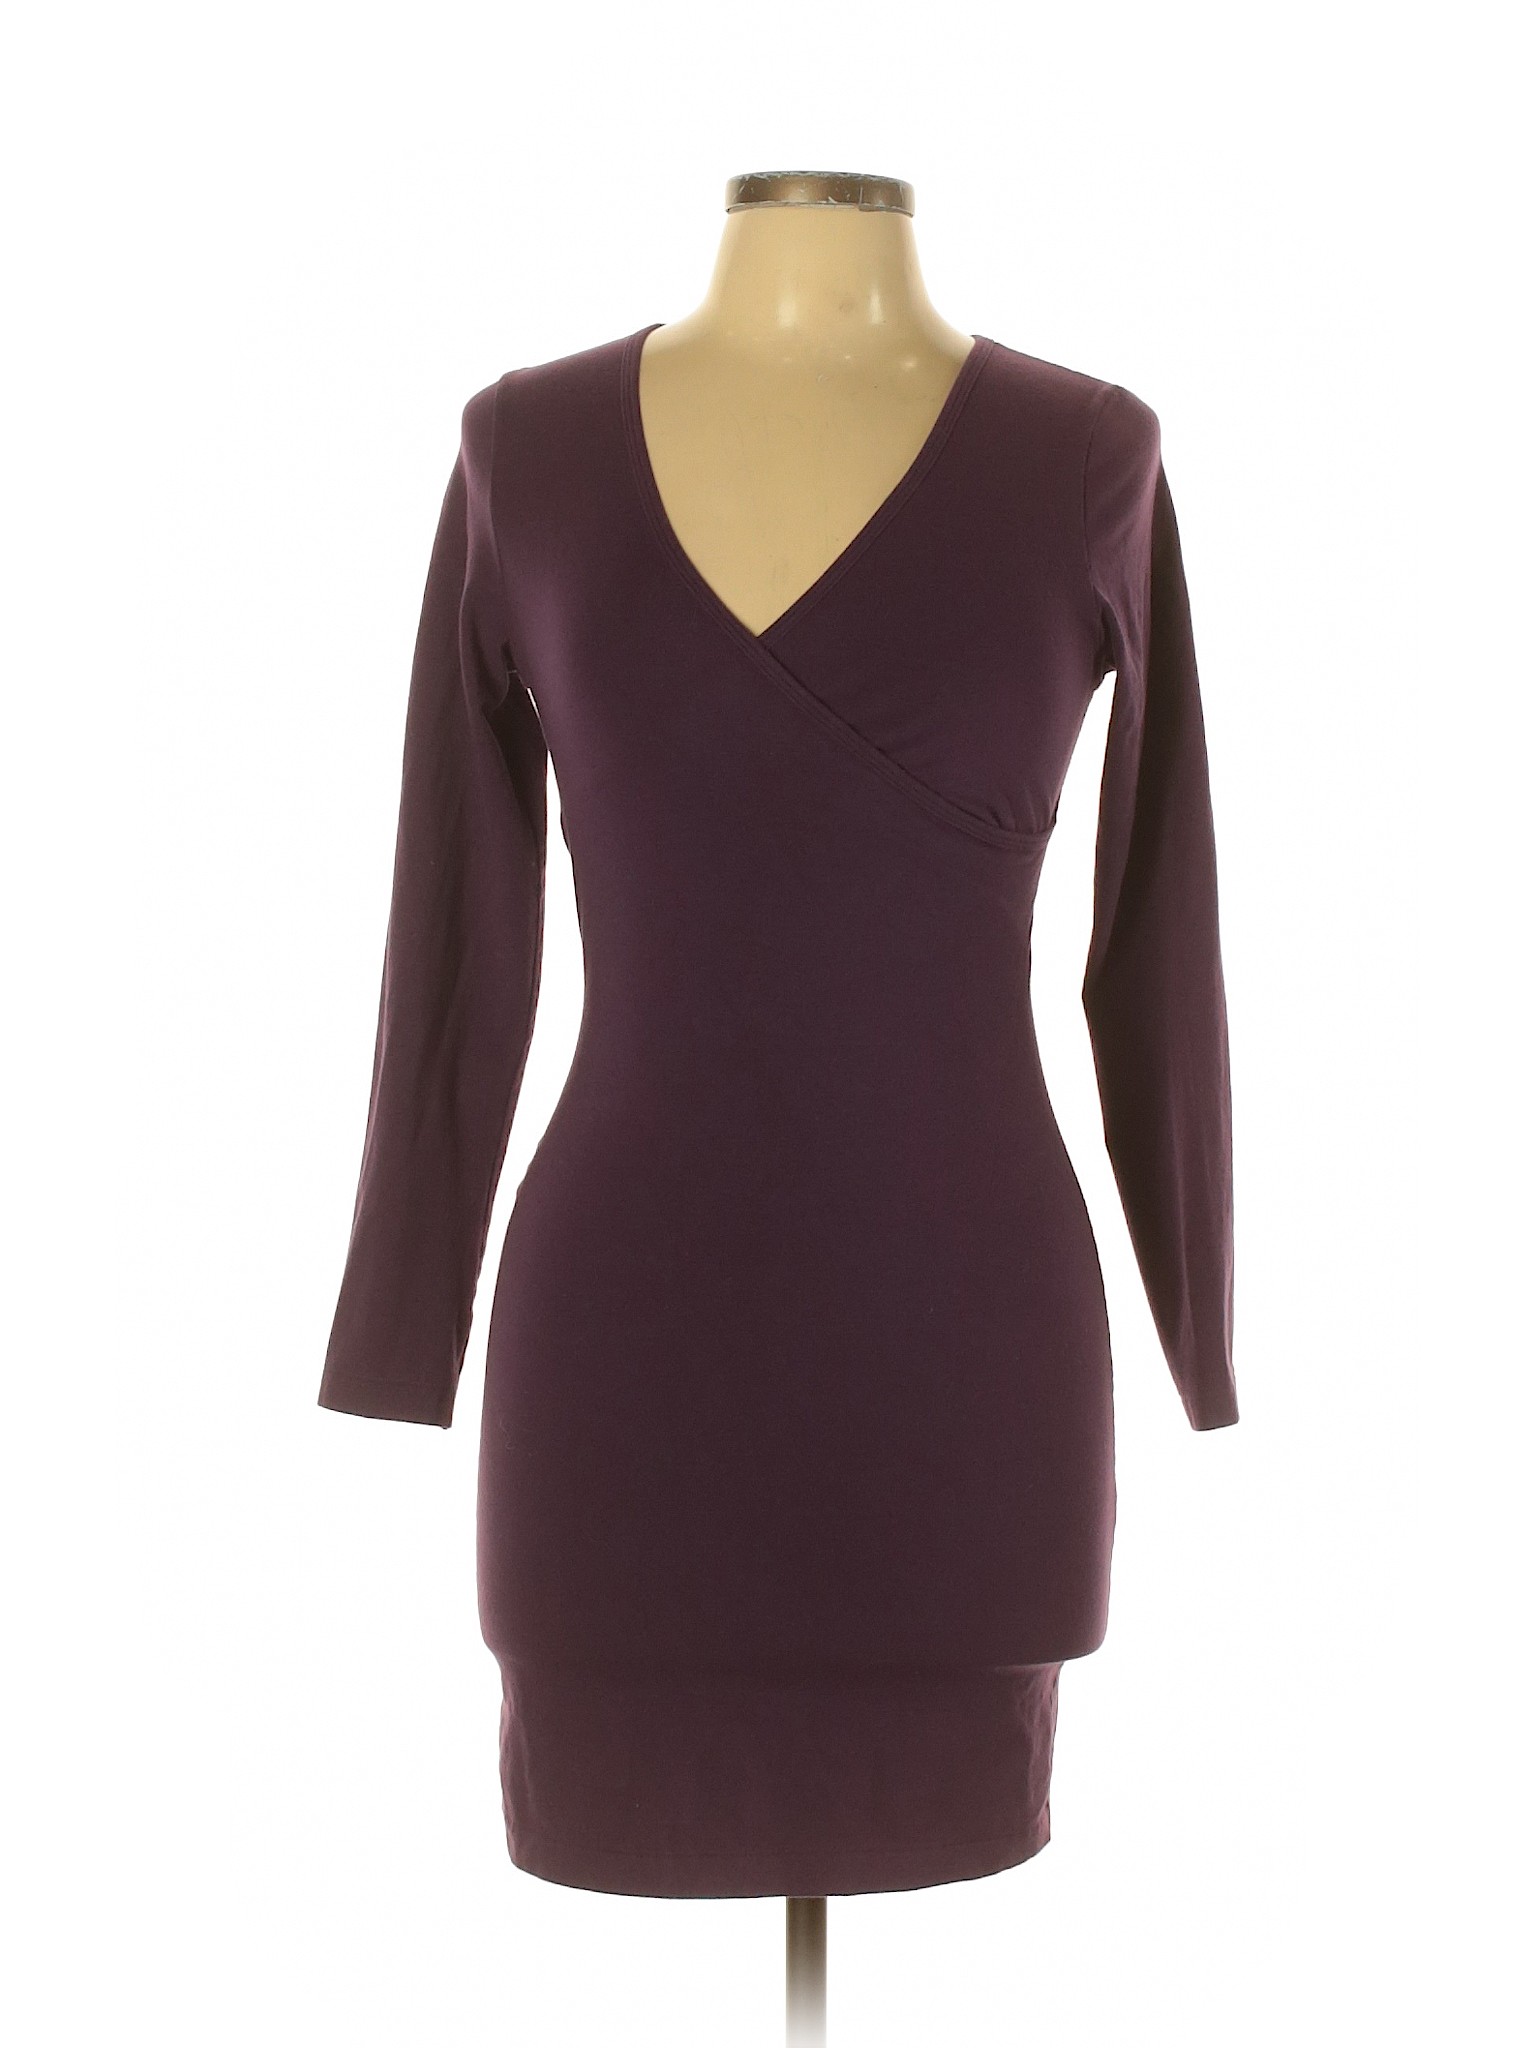 American Apparel Women Purple Casual Dress L | eBay